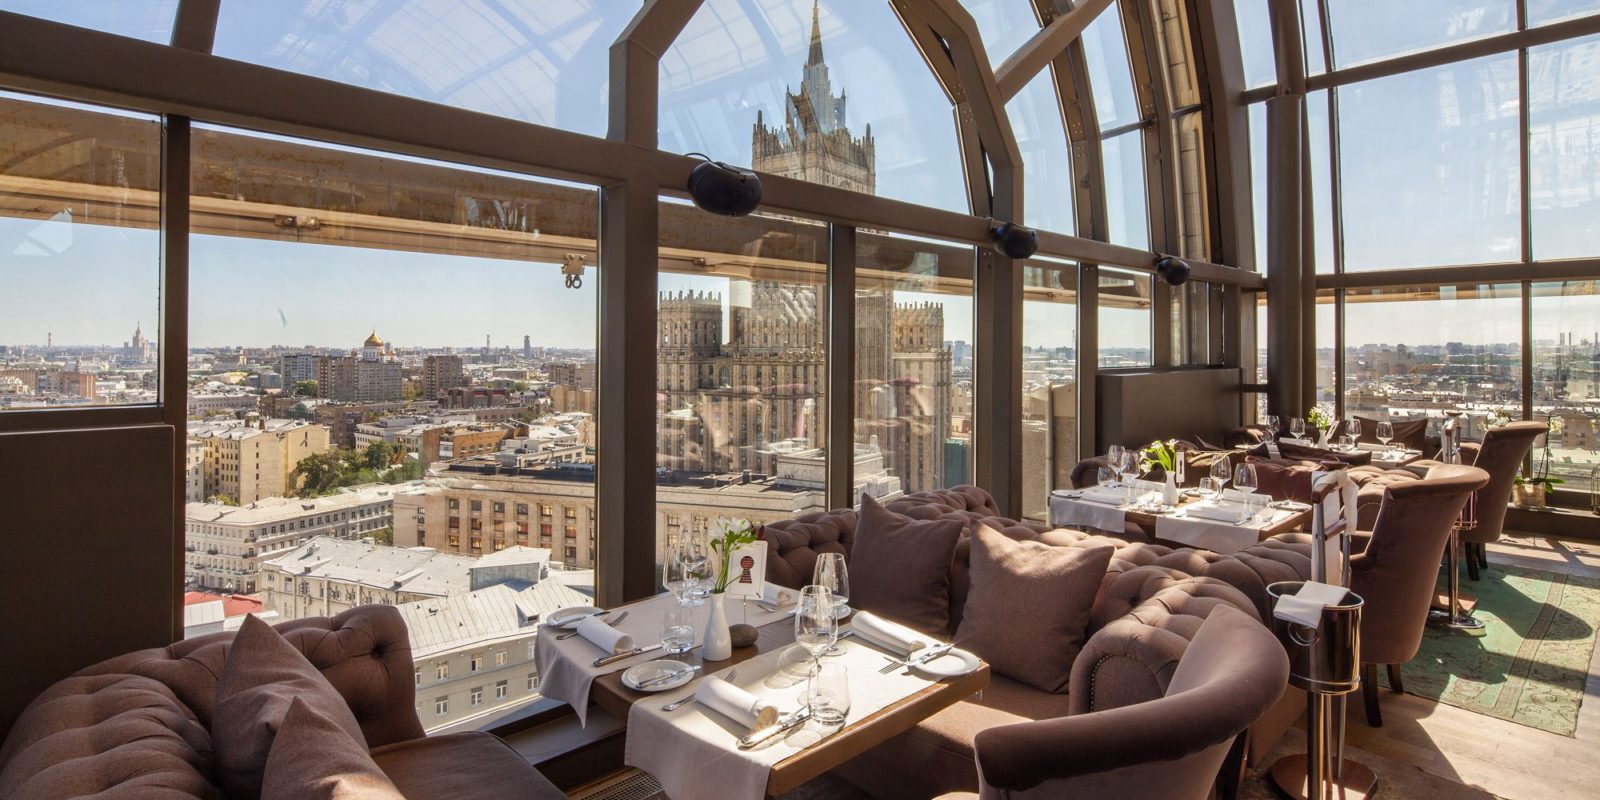 White Rabbite el restaurante de Moscú con vistas panorámicas y bonitas. Está de moda entre los moscovitas y es necesario reservar para cenar